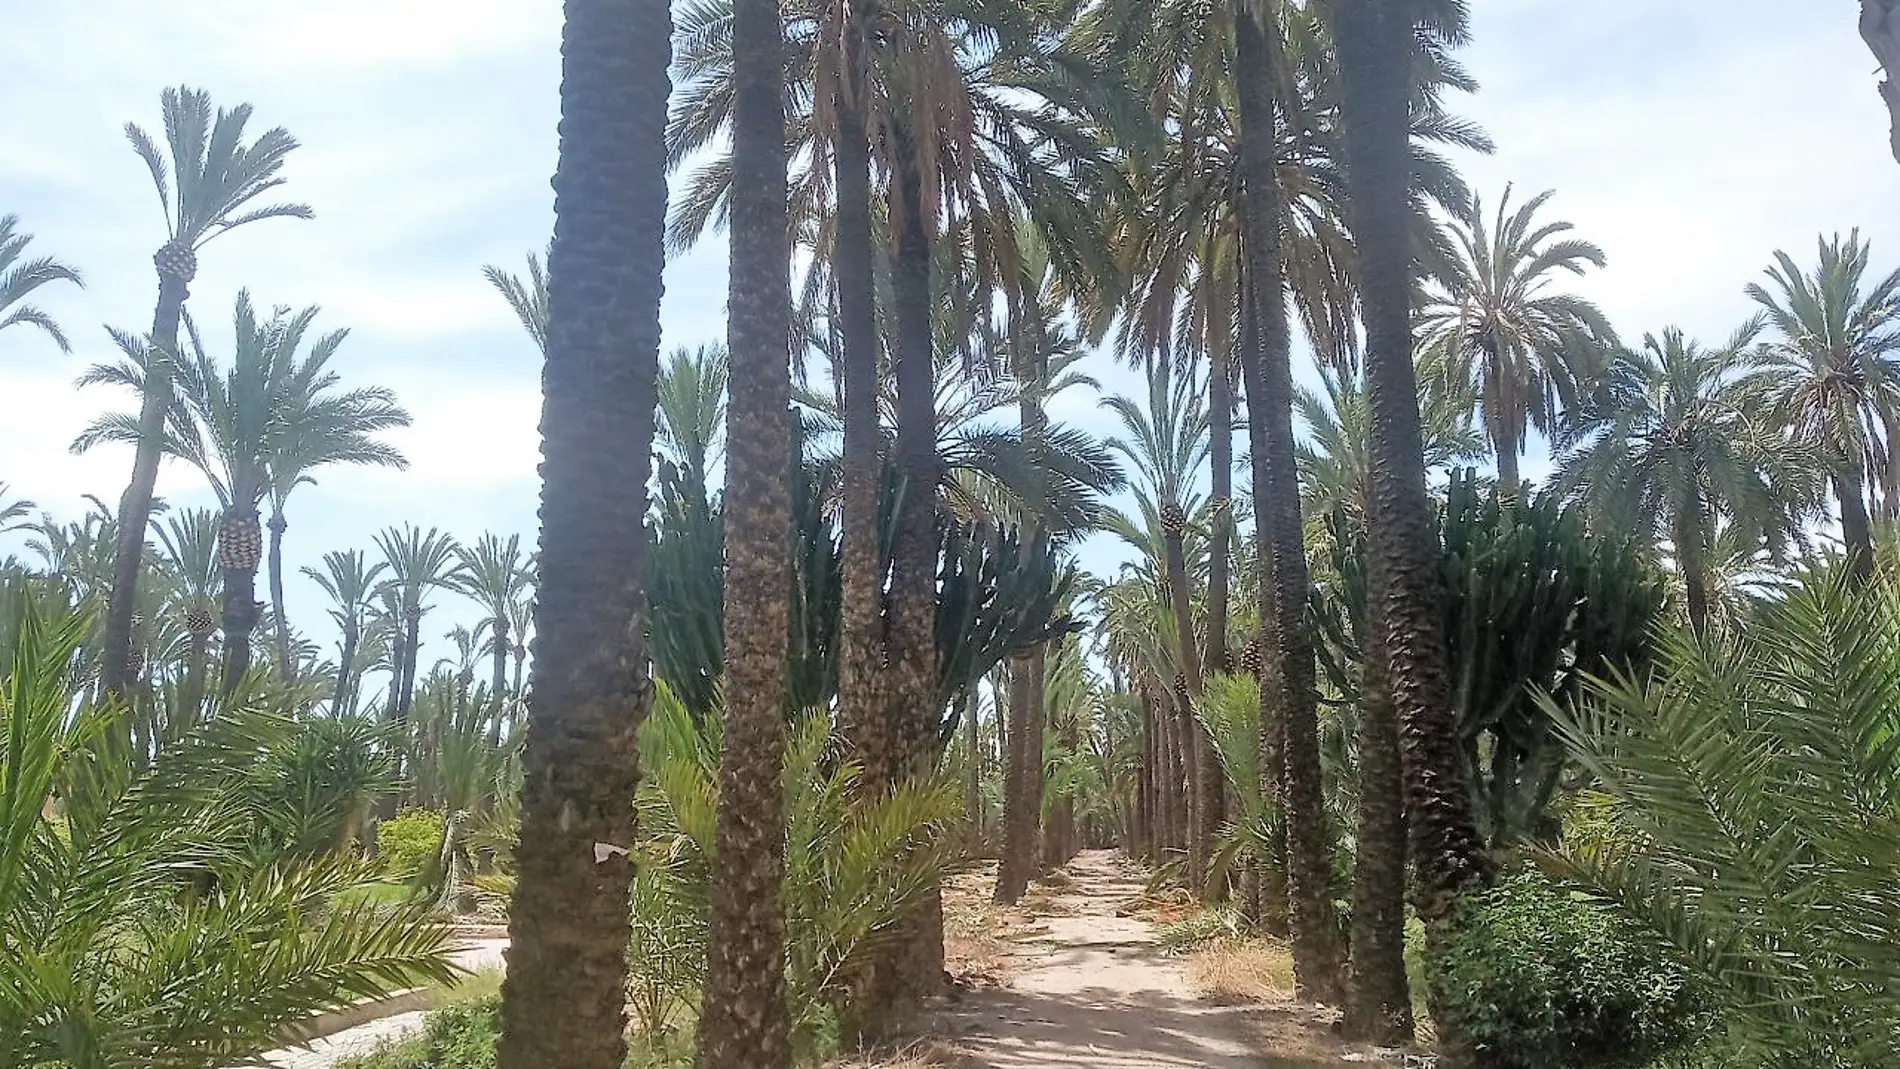 Huerto de palmeras en Elche.